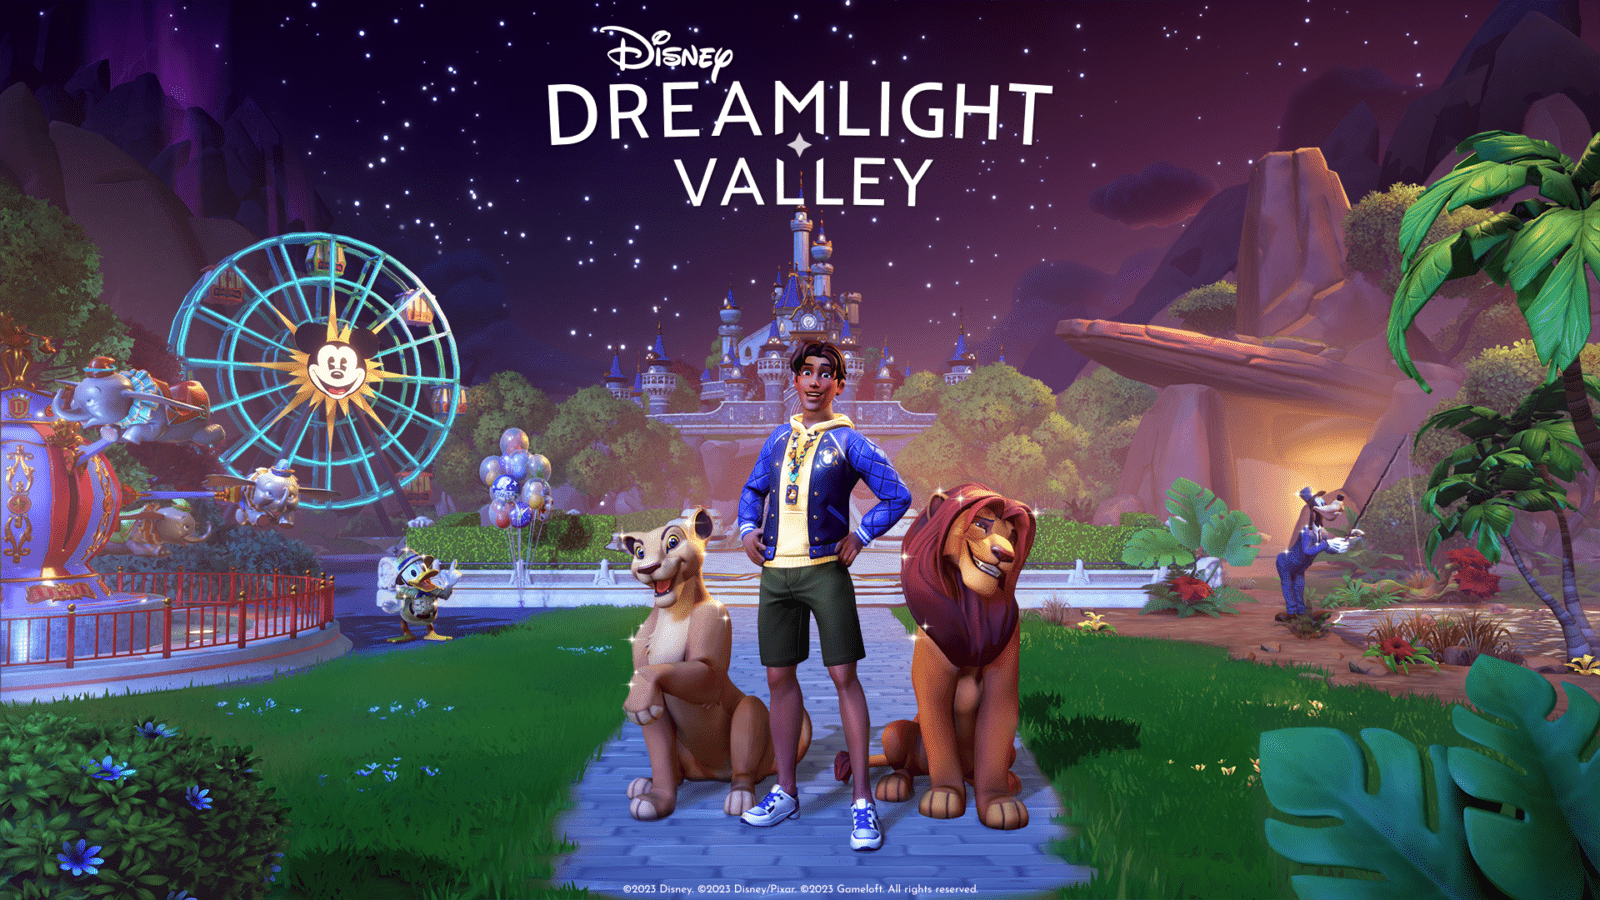 Abrace o estilo de vida Hakuna Matata com Simba e Nala em Disney Dreamlight Valley na atualização "Pride of the Valley"